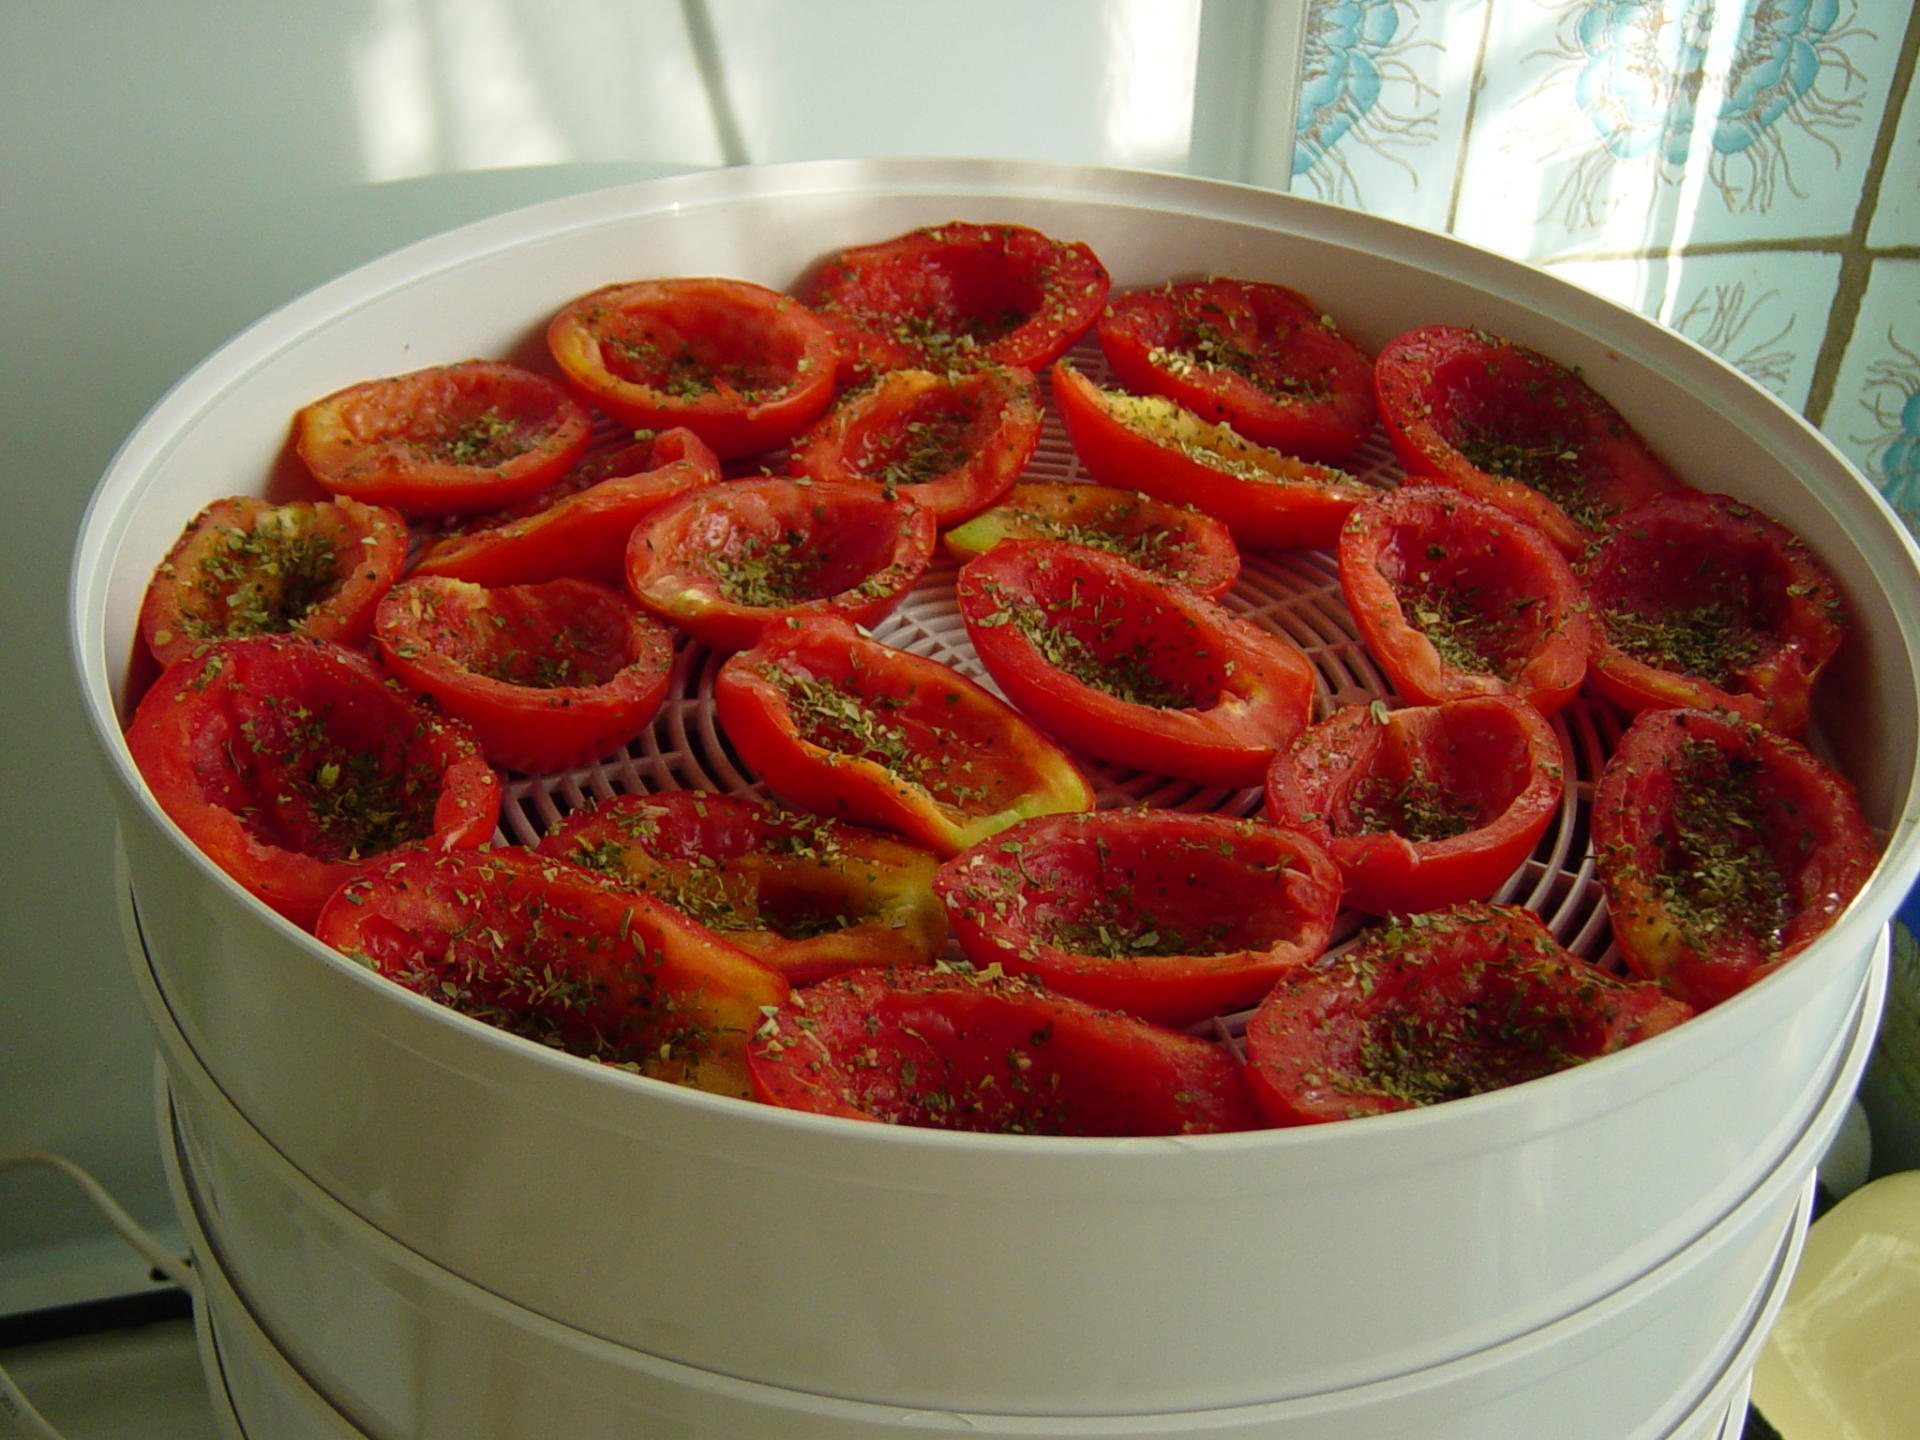 vyalenye pomidory v domashnikh usloviyakh: recepty na zimu60 Вялені помідори в домашніх умовах: рецепти на зиму